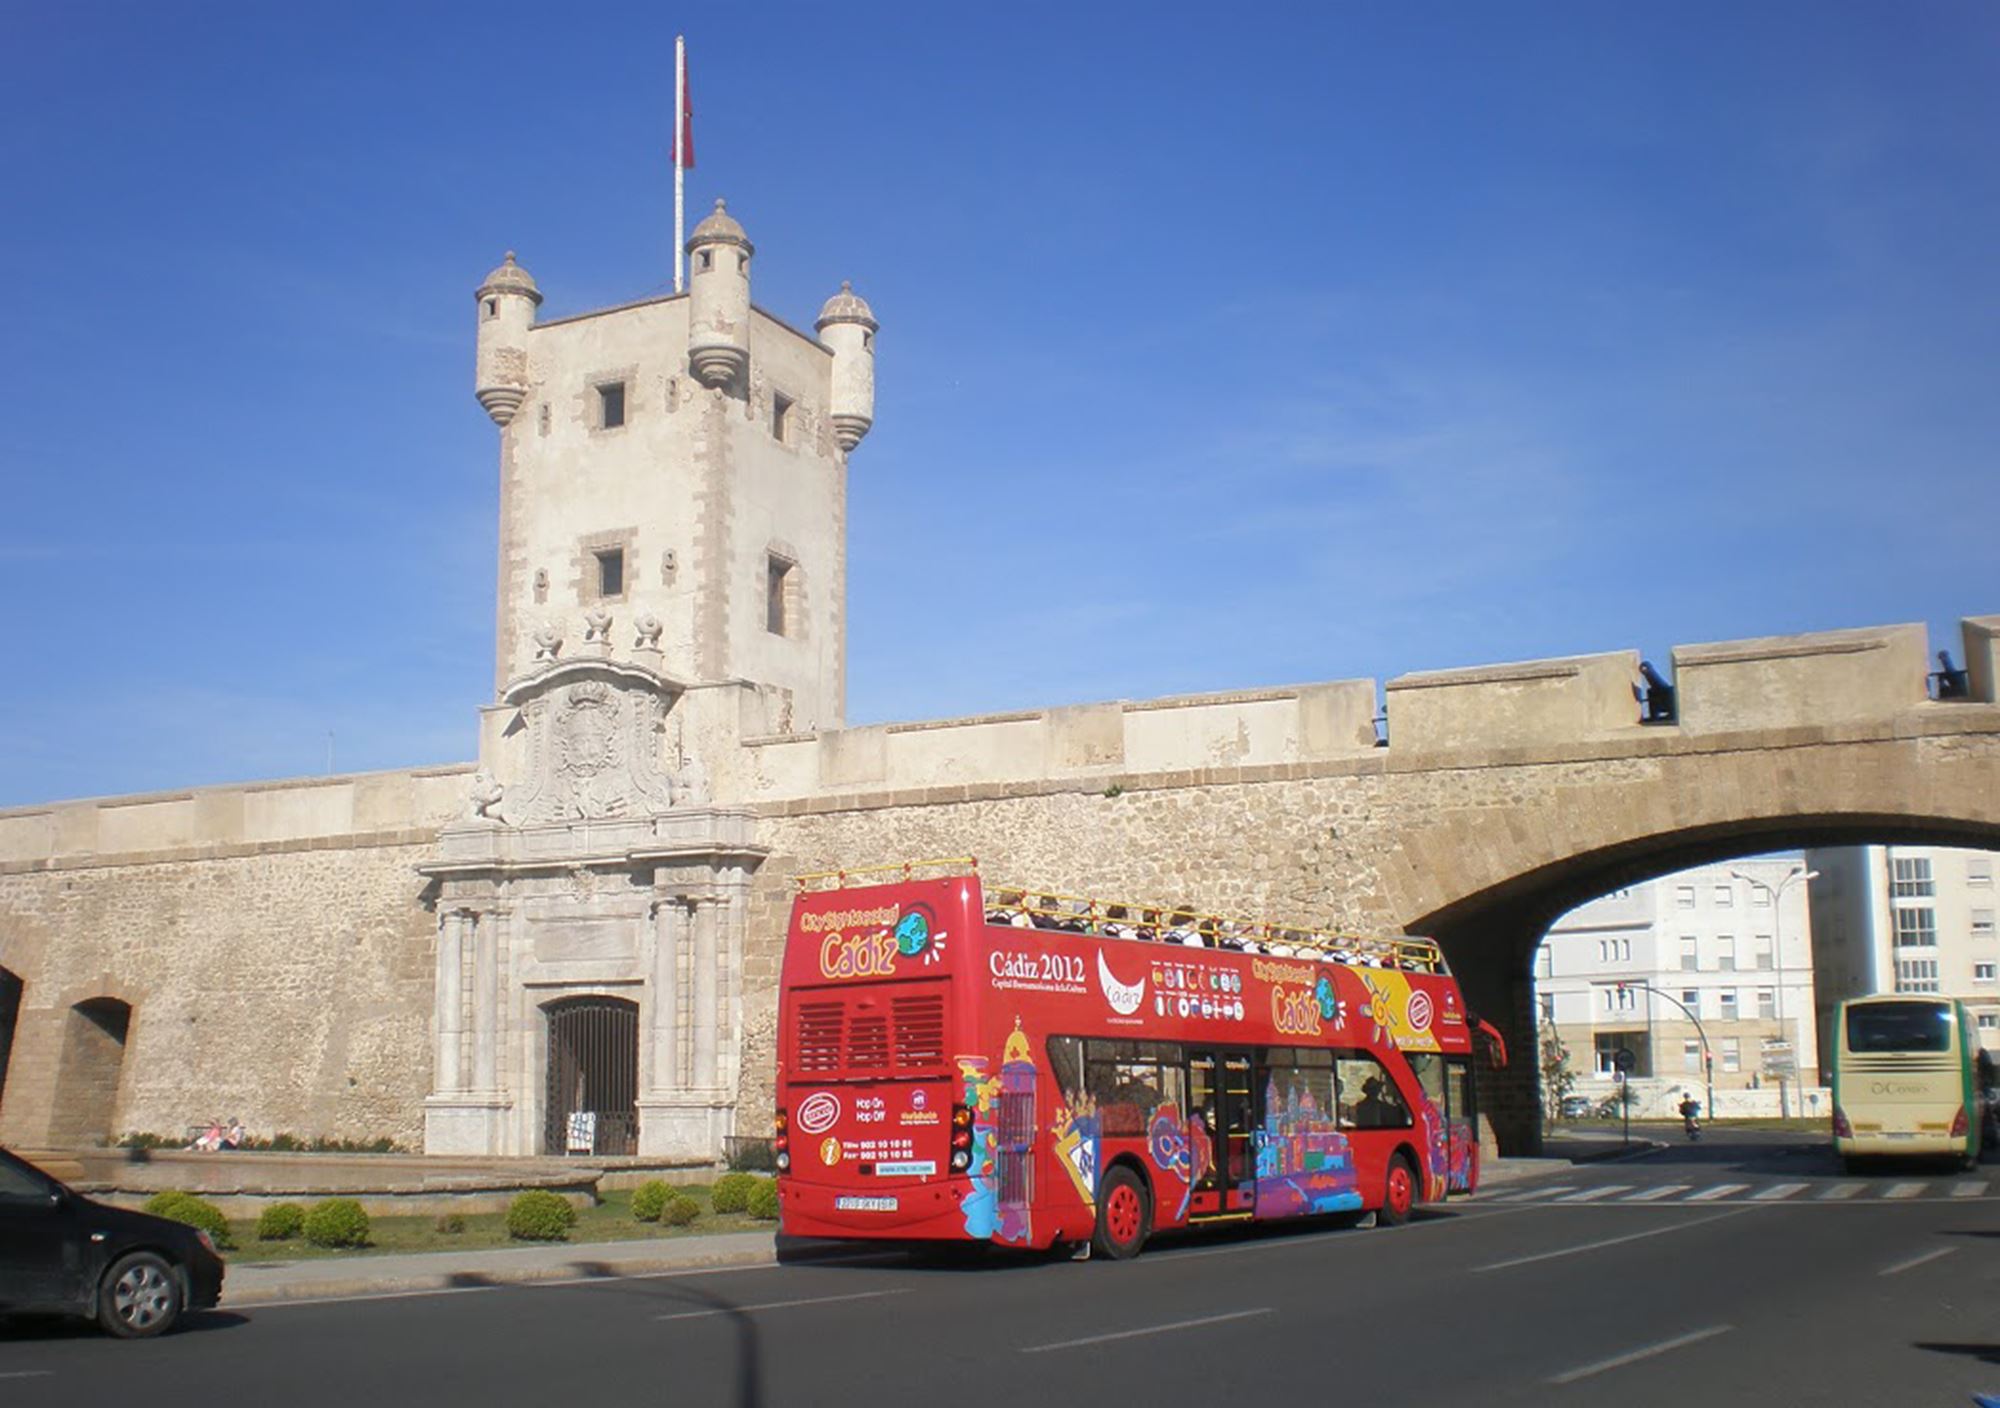 réservations Bus Touristique City Sightseeing Cadix billets visiter